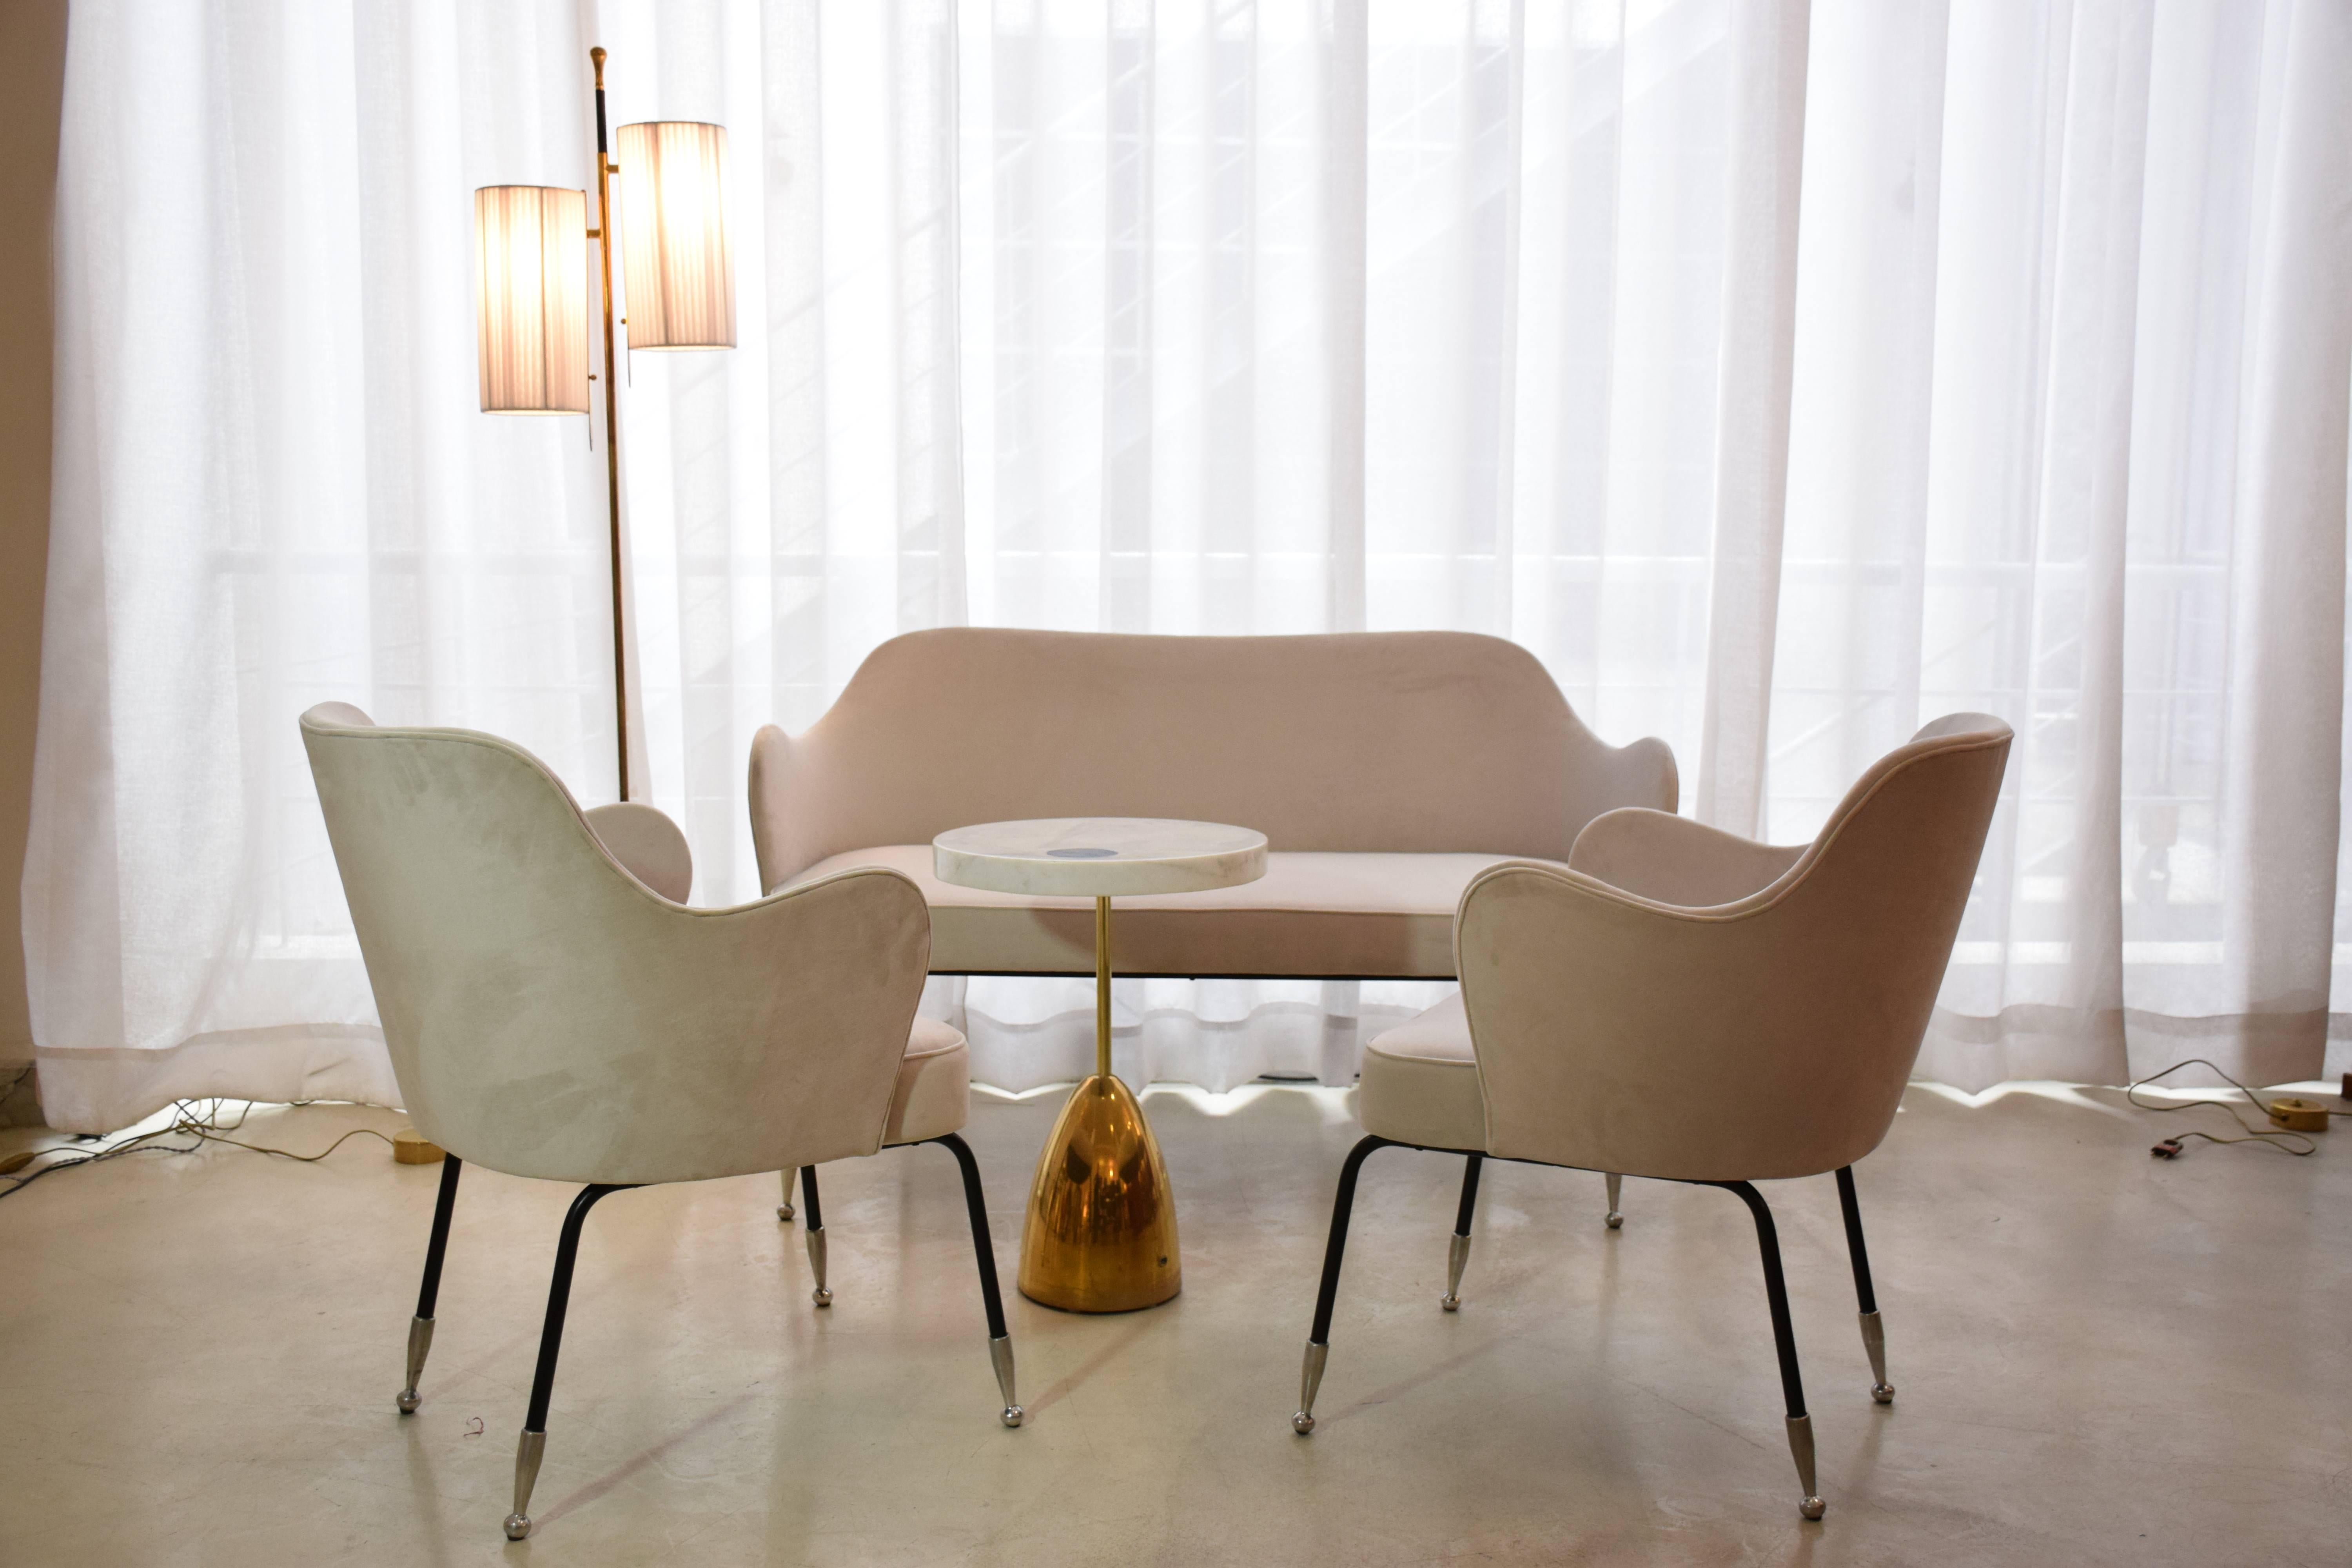 Paire de chaises courbes italiennes vintage du 20e siècle entièrement restaurées avec une nouvelle tapisserie blanc cassé, des pieds re-laqués en noir - ils étaient initialement en laque blanche - et des terminaisons élevées en aluminium poli.